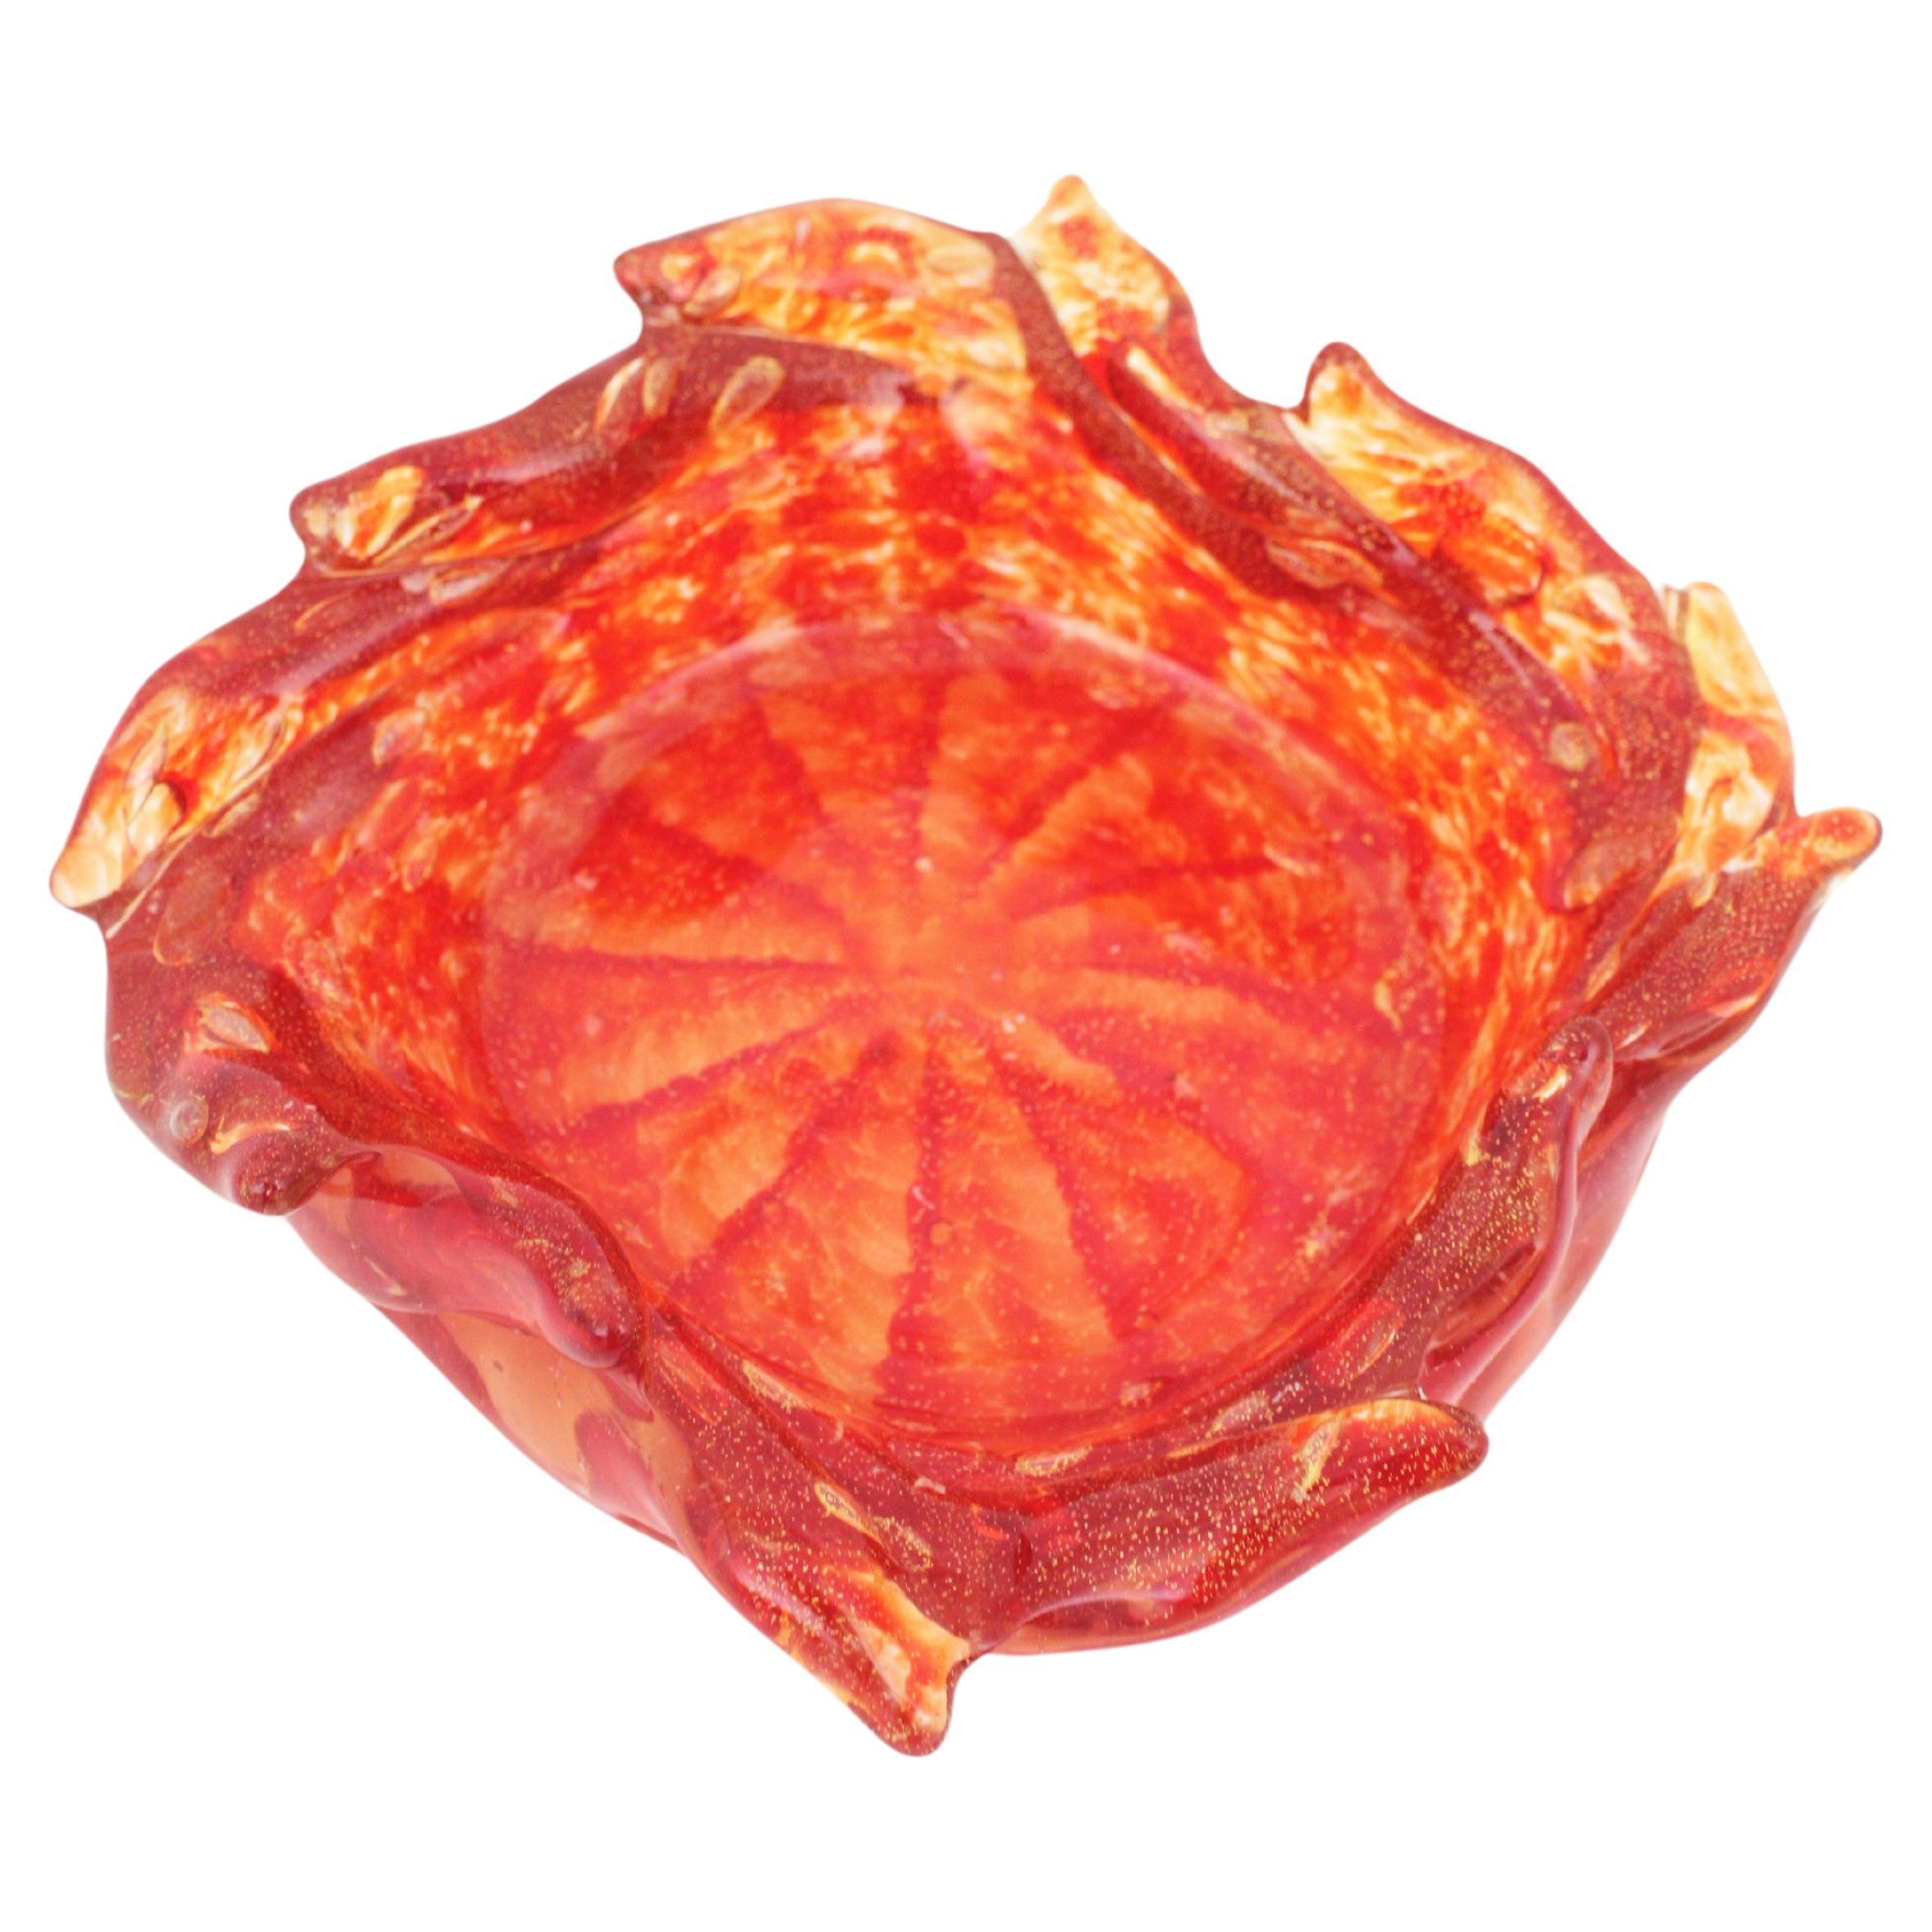 Bol en verre de Murano d'un rouge et d'un orange éclatants. Attribué à Barovier&Toso, Italie, années 1950.
Il présente un magnifique décor strié, des bulles contrôlées, de la poussière d'or aventurine et une forme de tornade. Un travail exquis de